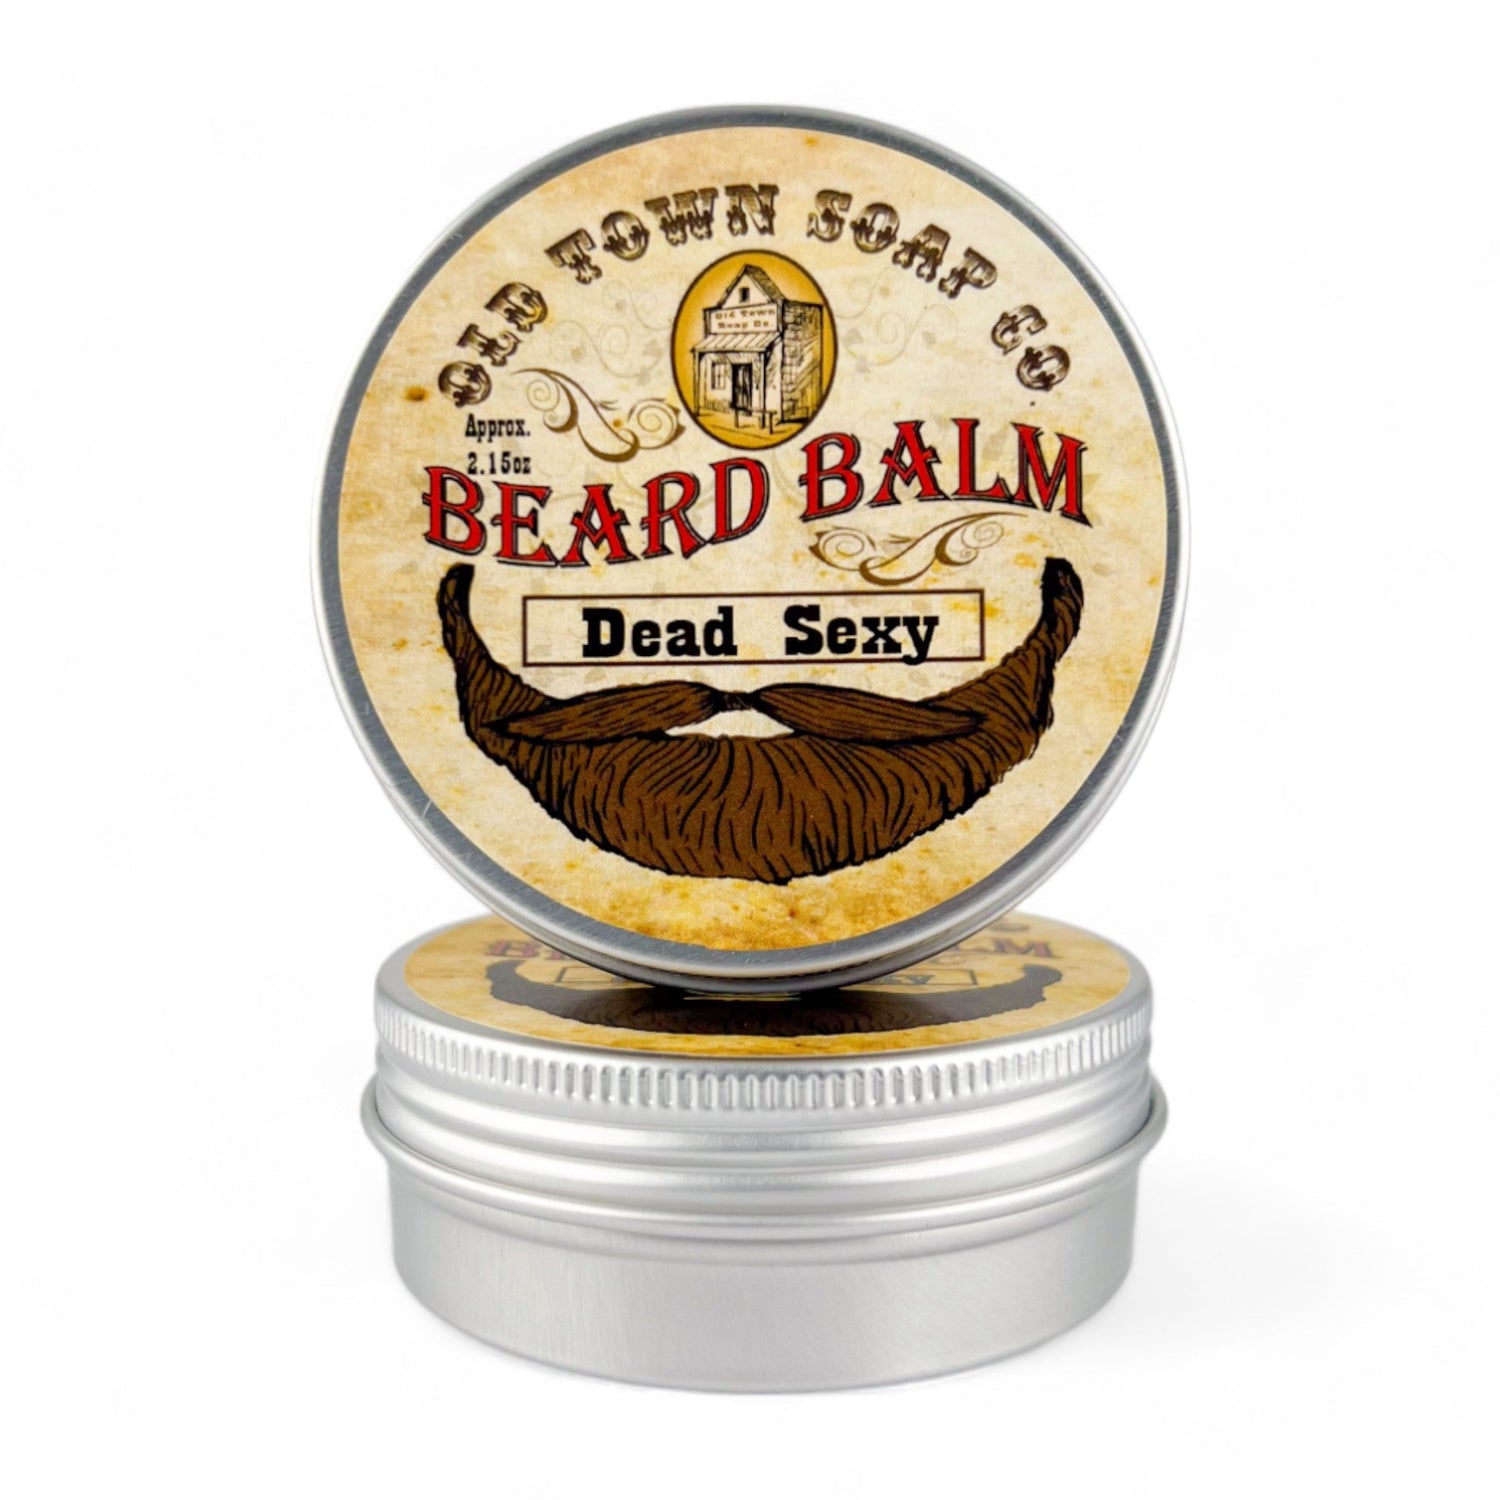 Dead Sexy Beard Balm - Old Town Soap Co.